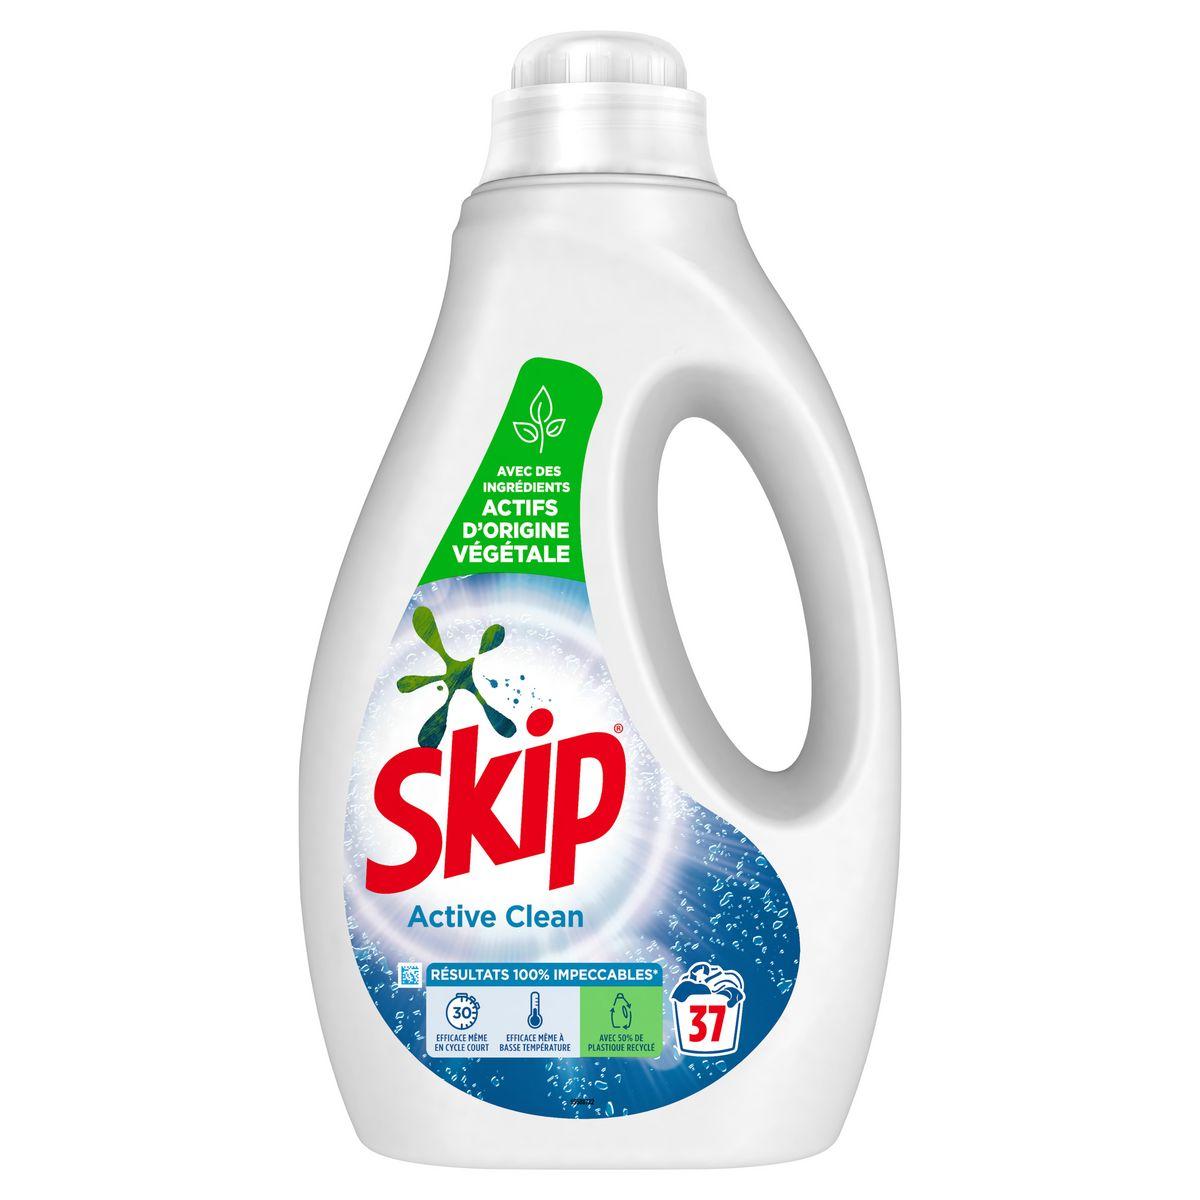 Skip Lessive Liquide Active Clean Lot 2 x 1,7l - 68 Lavages - 3400 ml